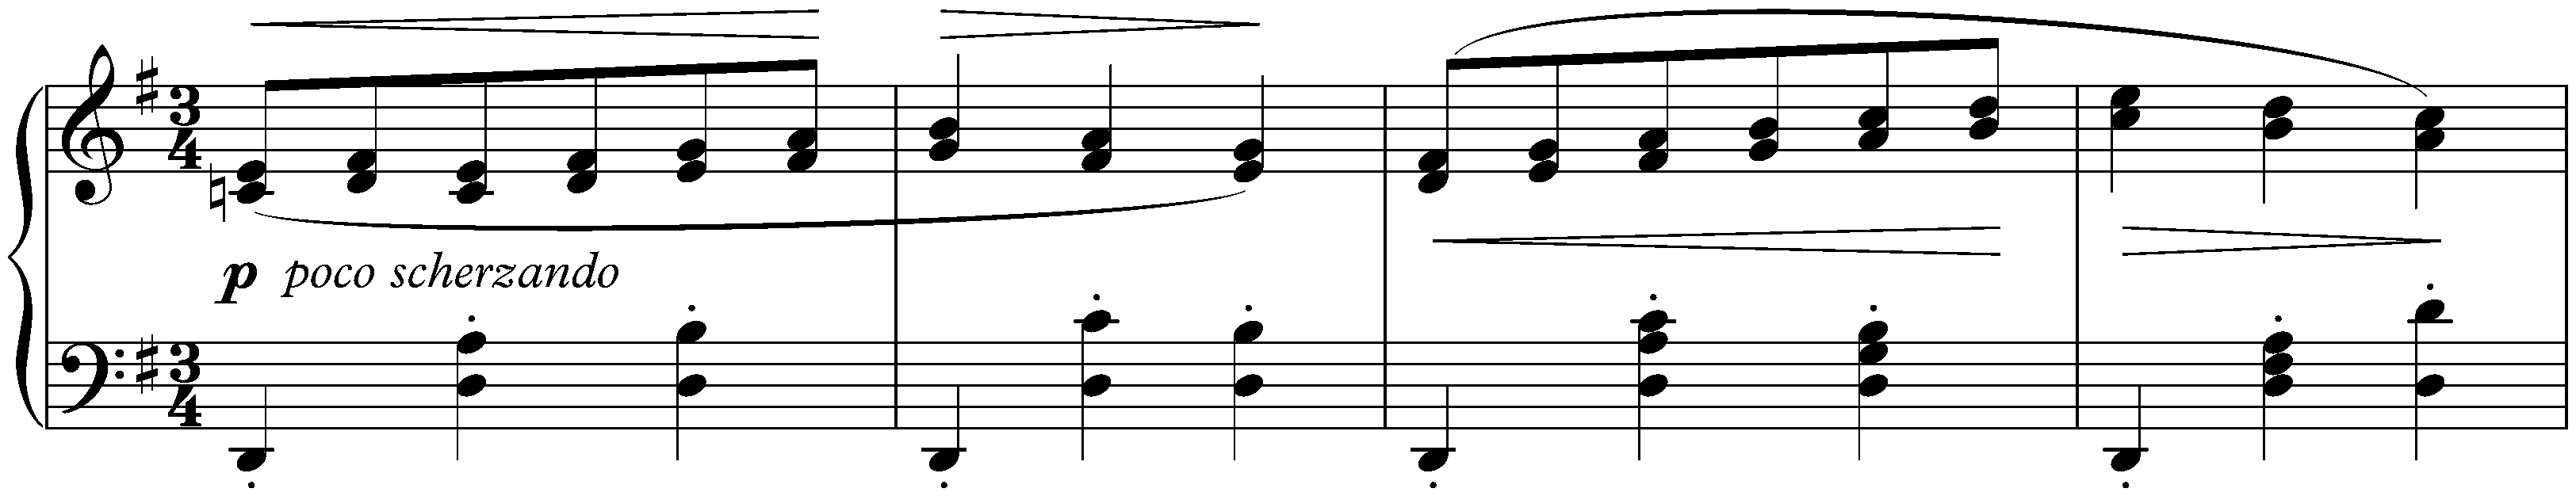 Sixteen Waltzes, op. 39; 10. G major